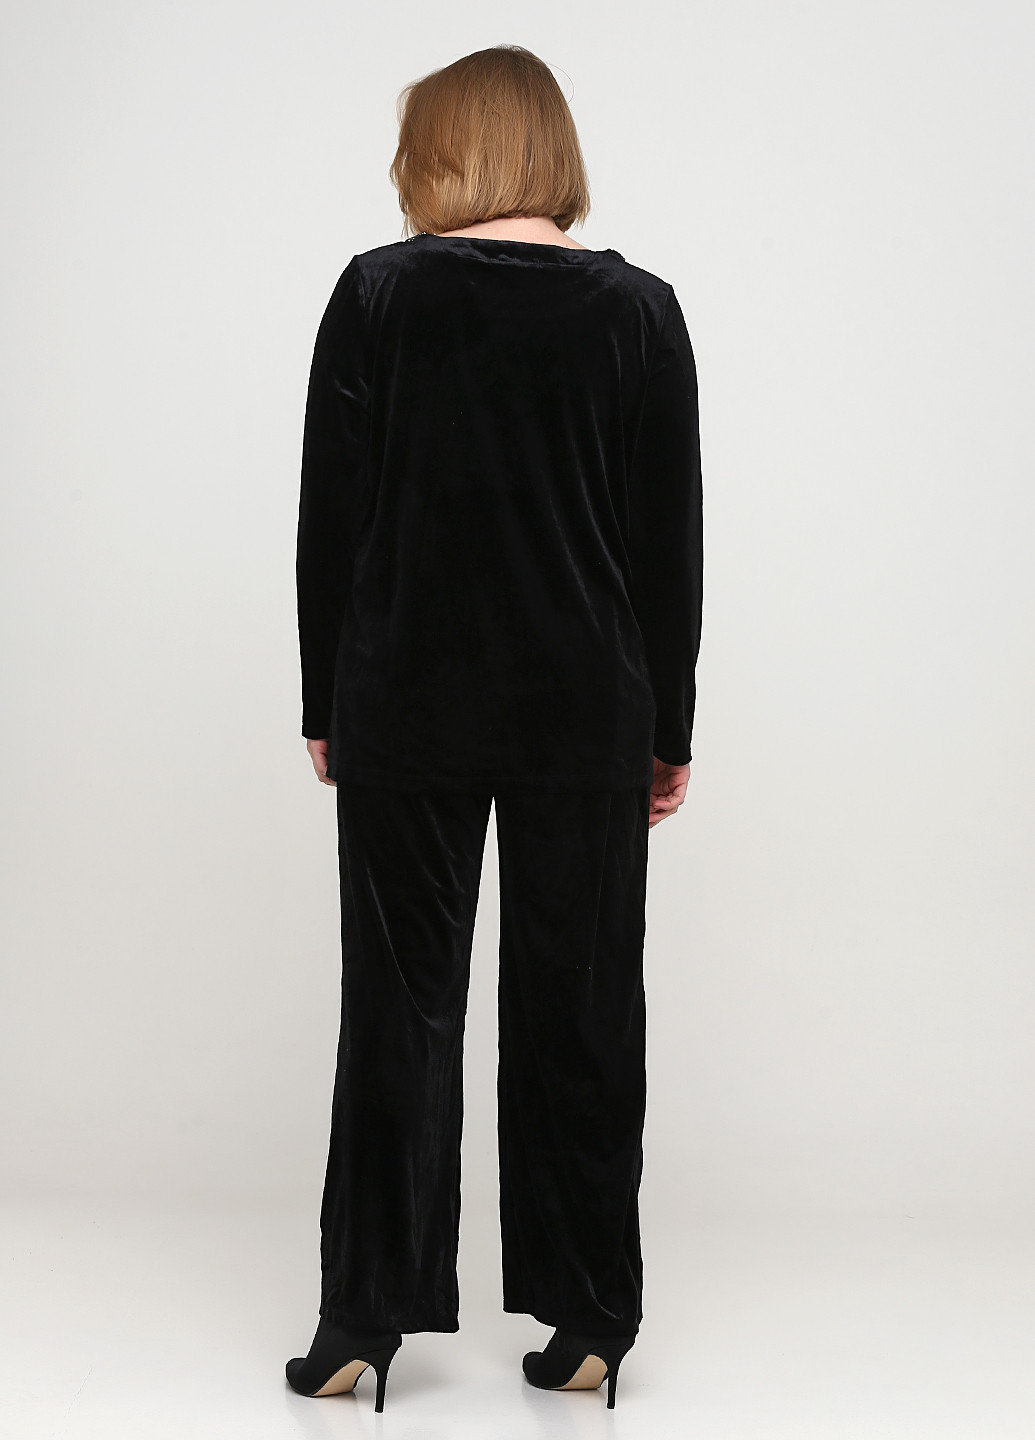 Костюм (блуза, брюки) Signature брючный однотонный чёрный кэжуал велюр, полиэстер